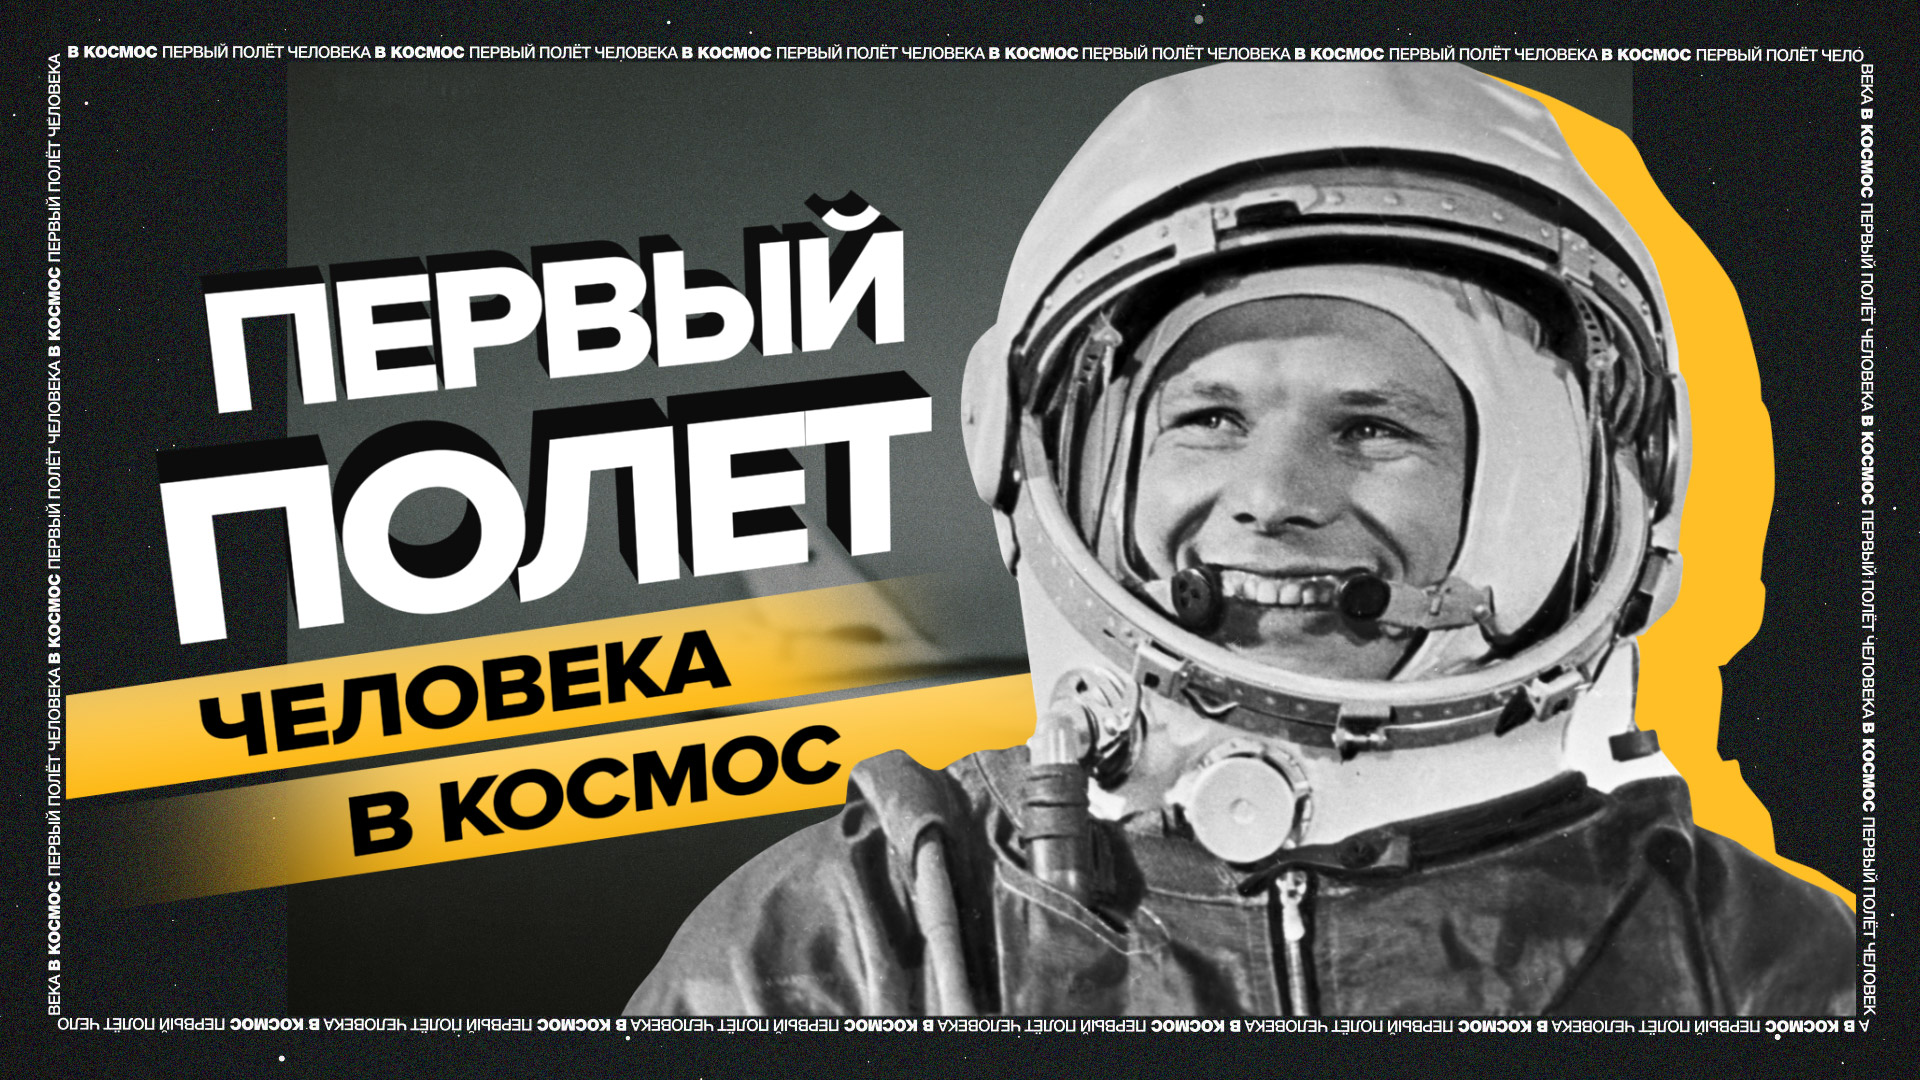 Путь к звёздам: как Юрий Гагарин стал первым космонавтом Земли